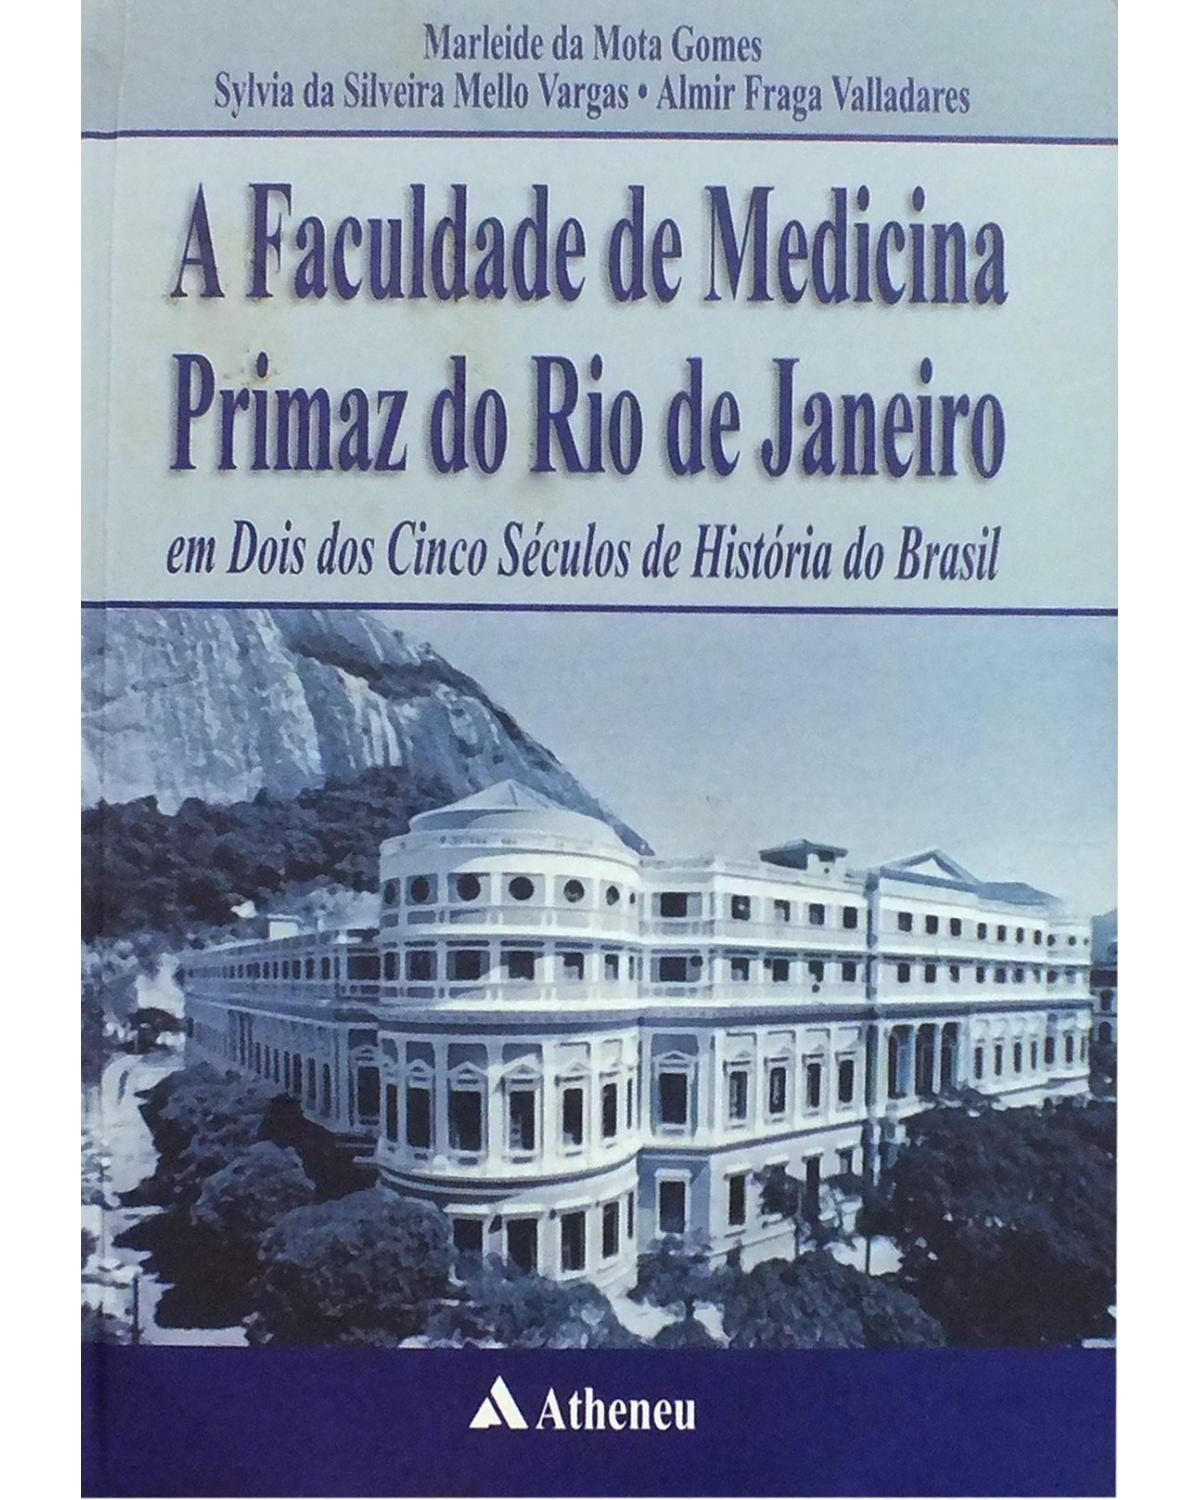 A faculdade de medicina primaz do Rio de Janeiro: Em dois dos cinco séculos de história do Brasil - 1ª Edição